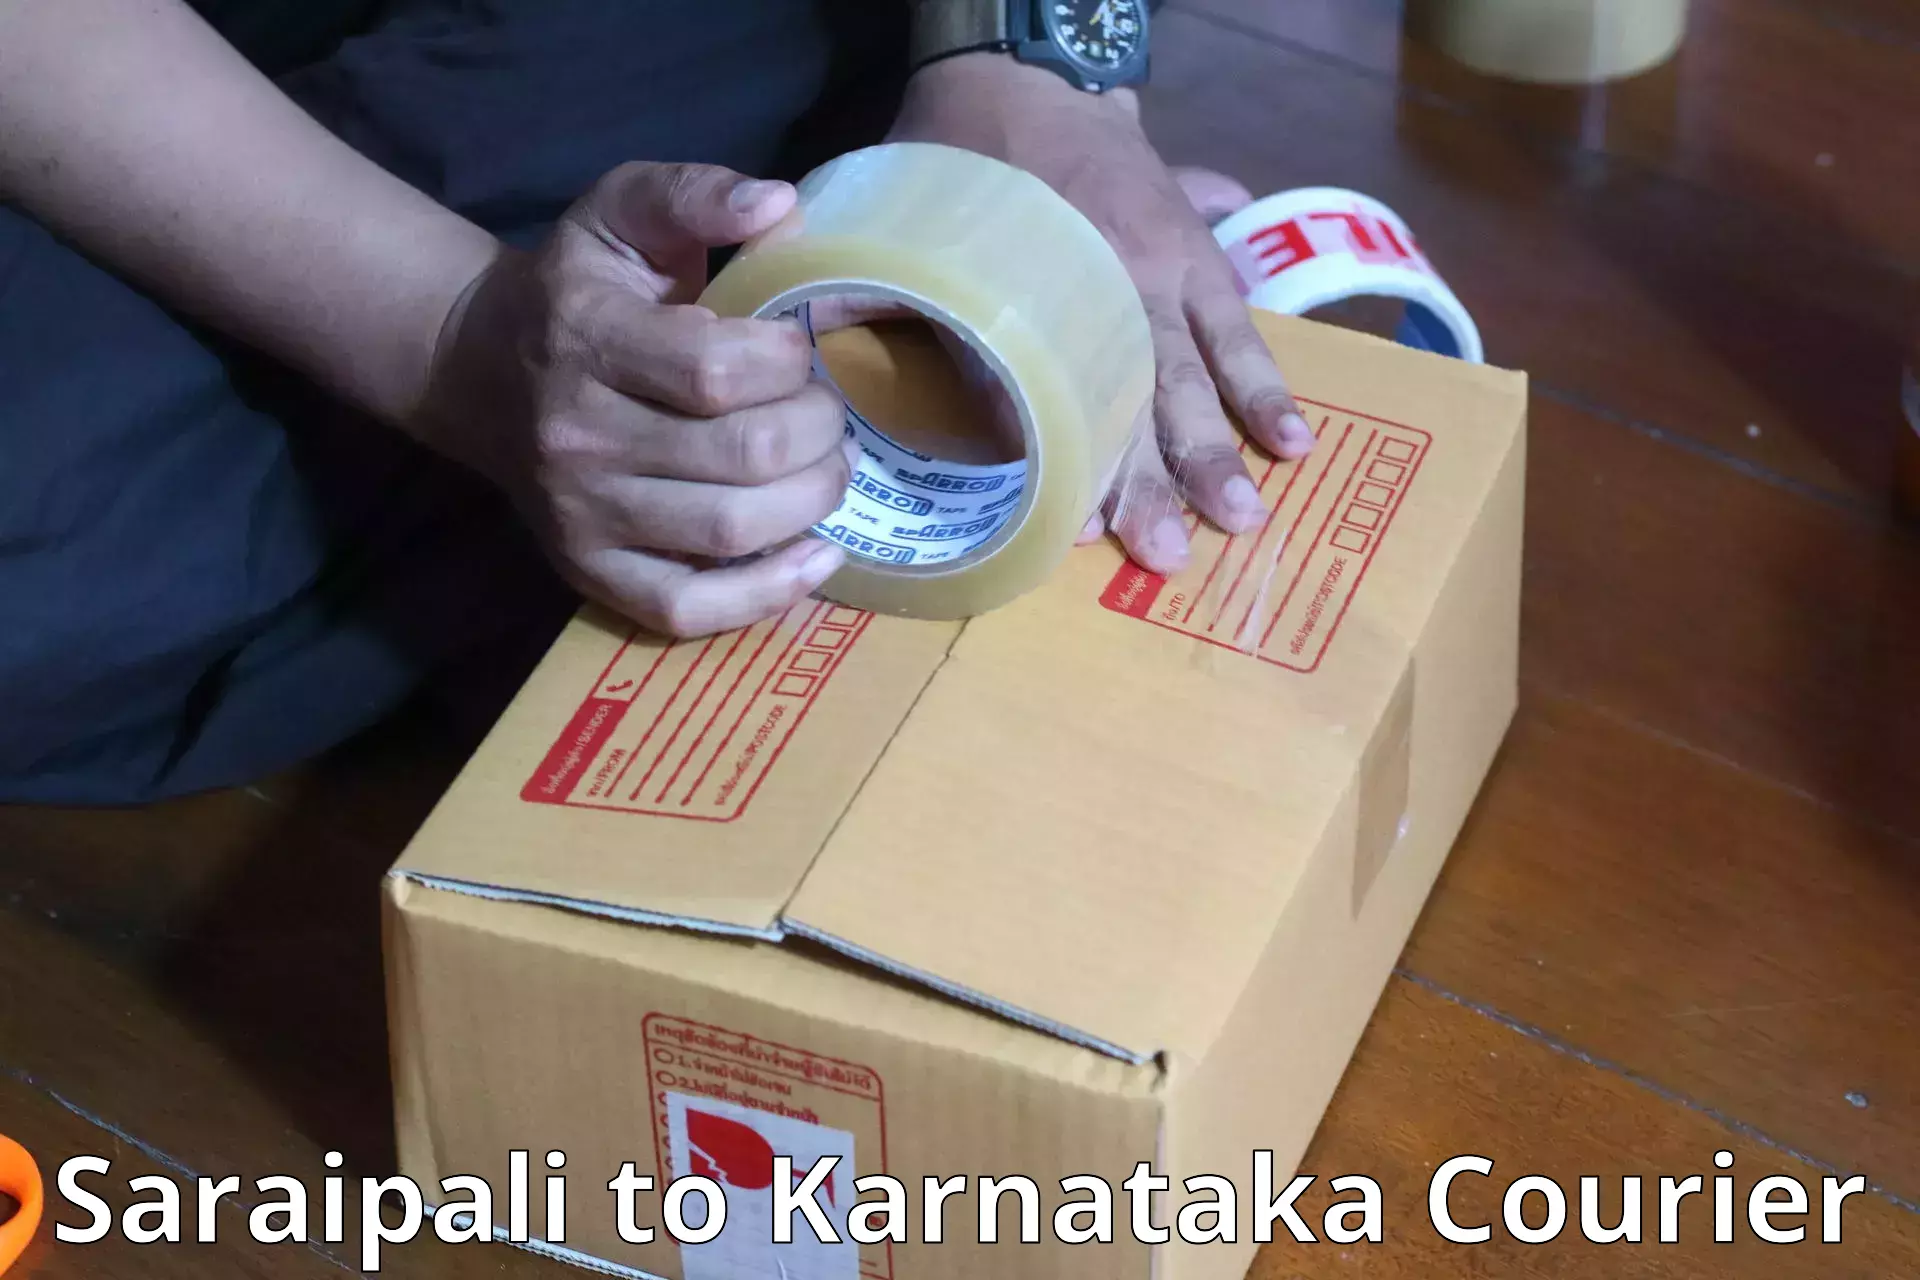 Luggage delivery providers Saraipali to Karnataka